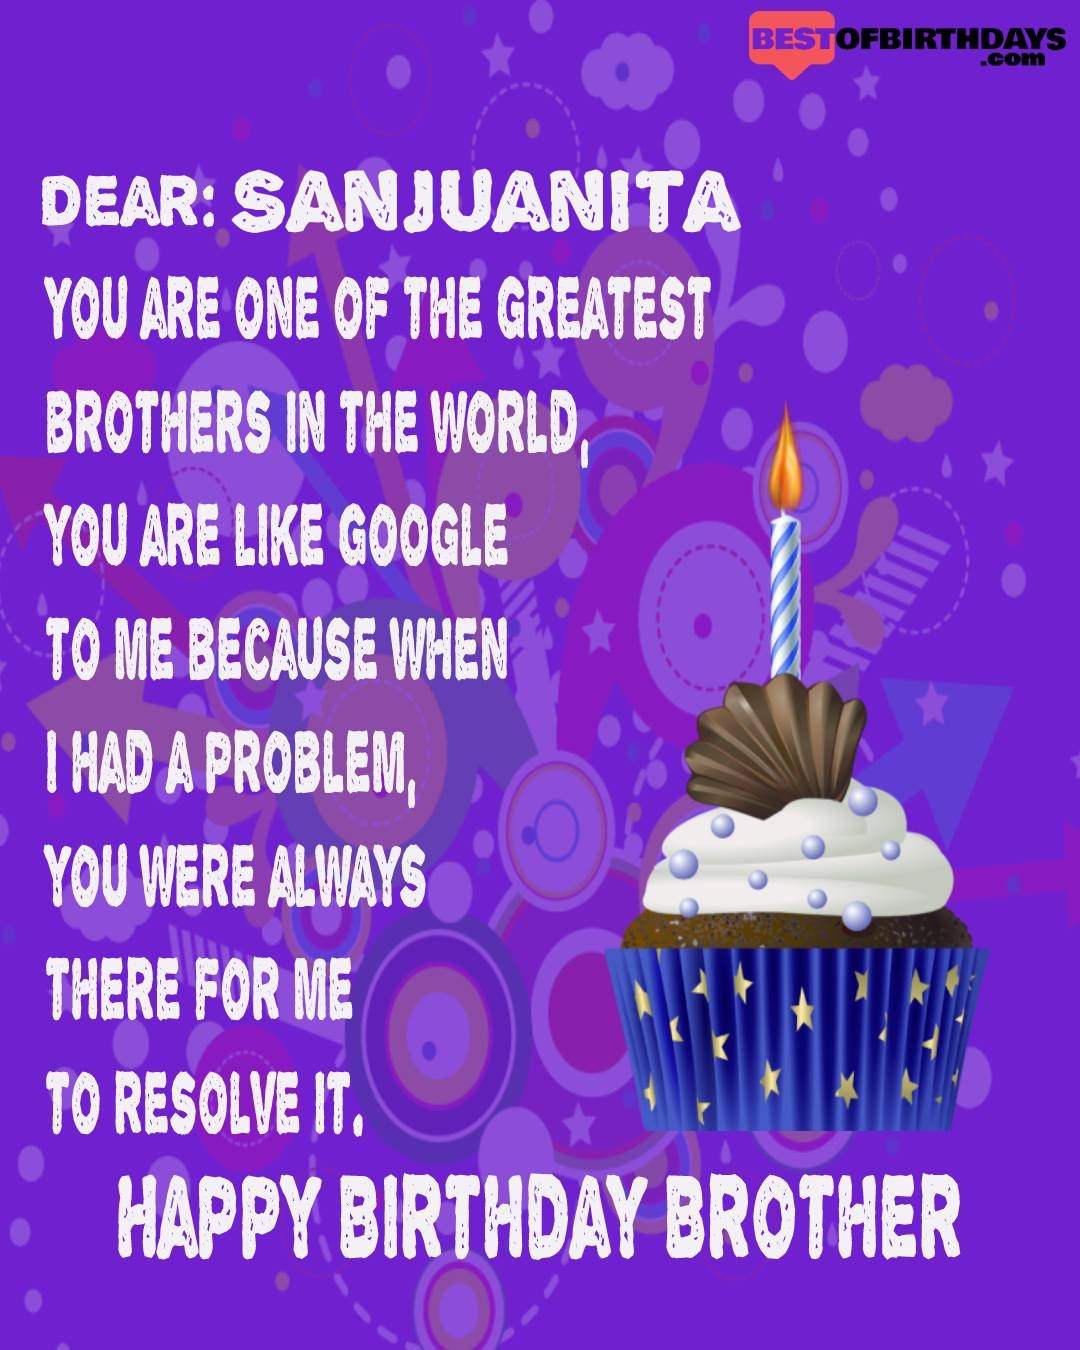 Happy birthday sanjuanita bhai brother bro